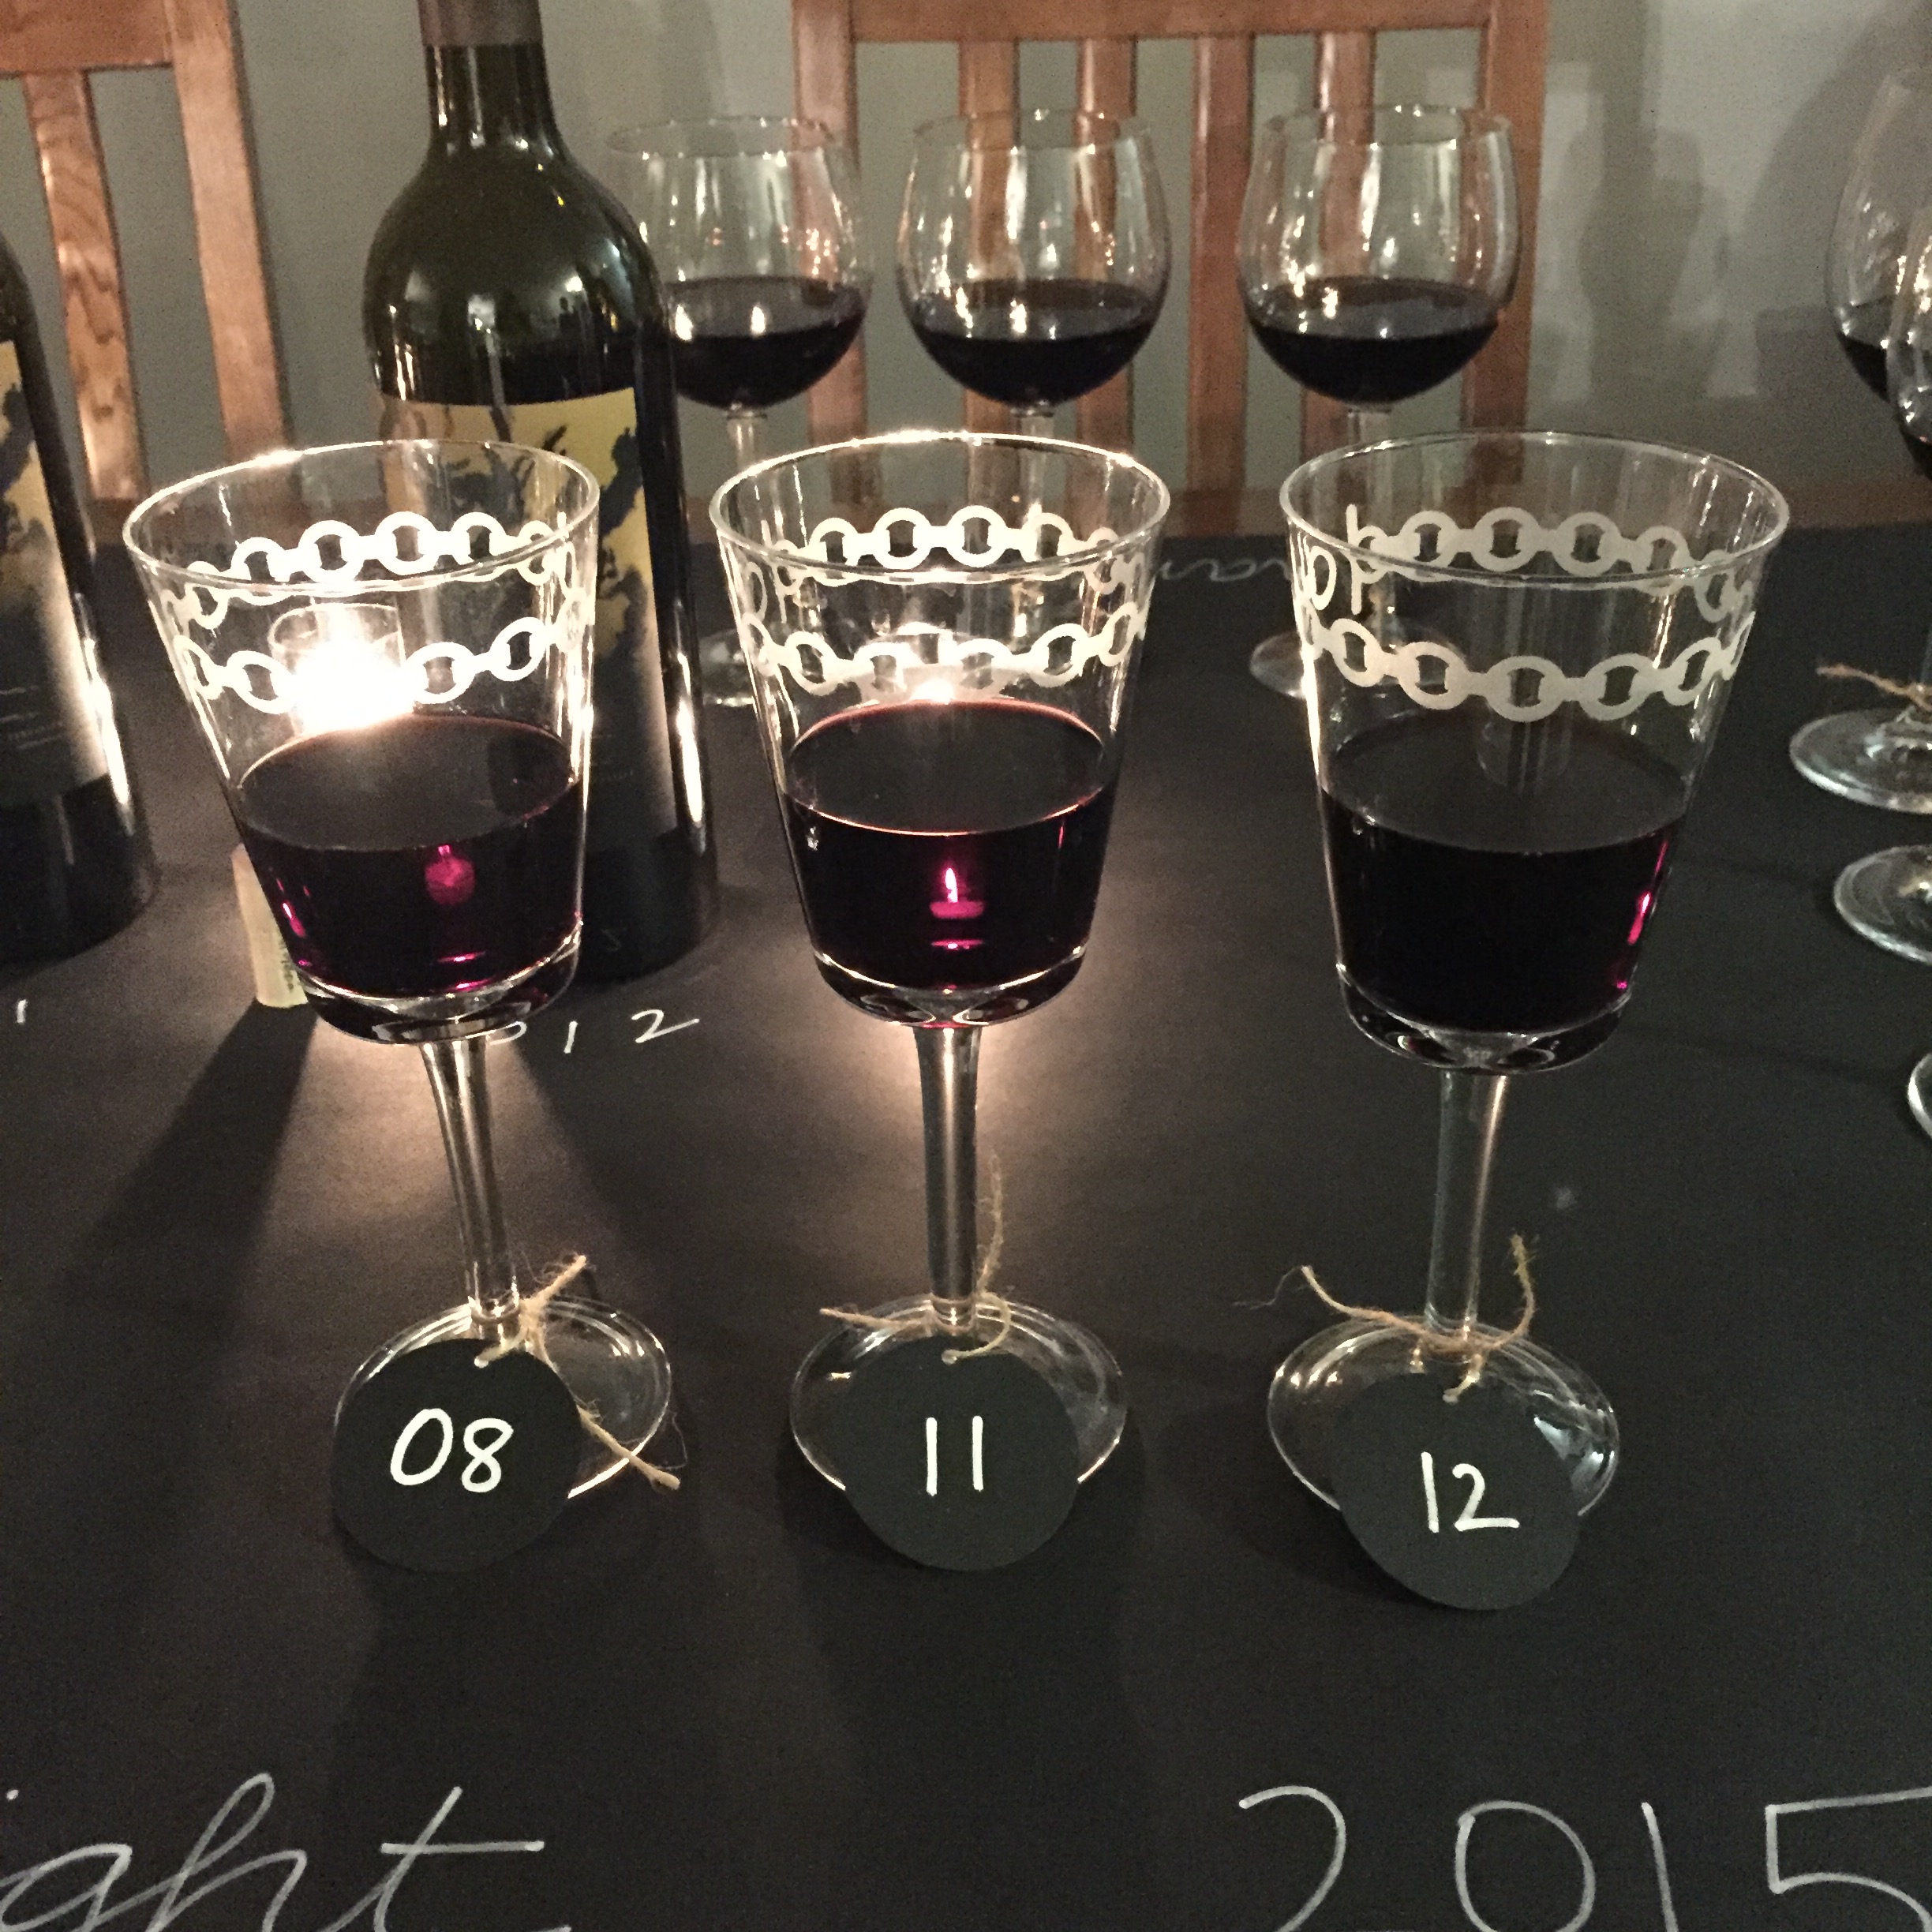 Phantom Flight Night Table, Bogle Wine, Phatom Wine, wine tasting table setting